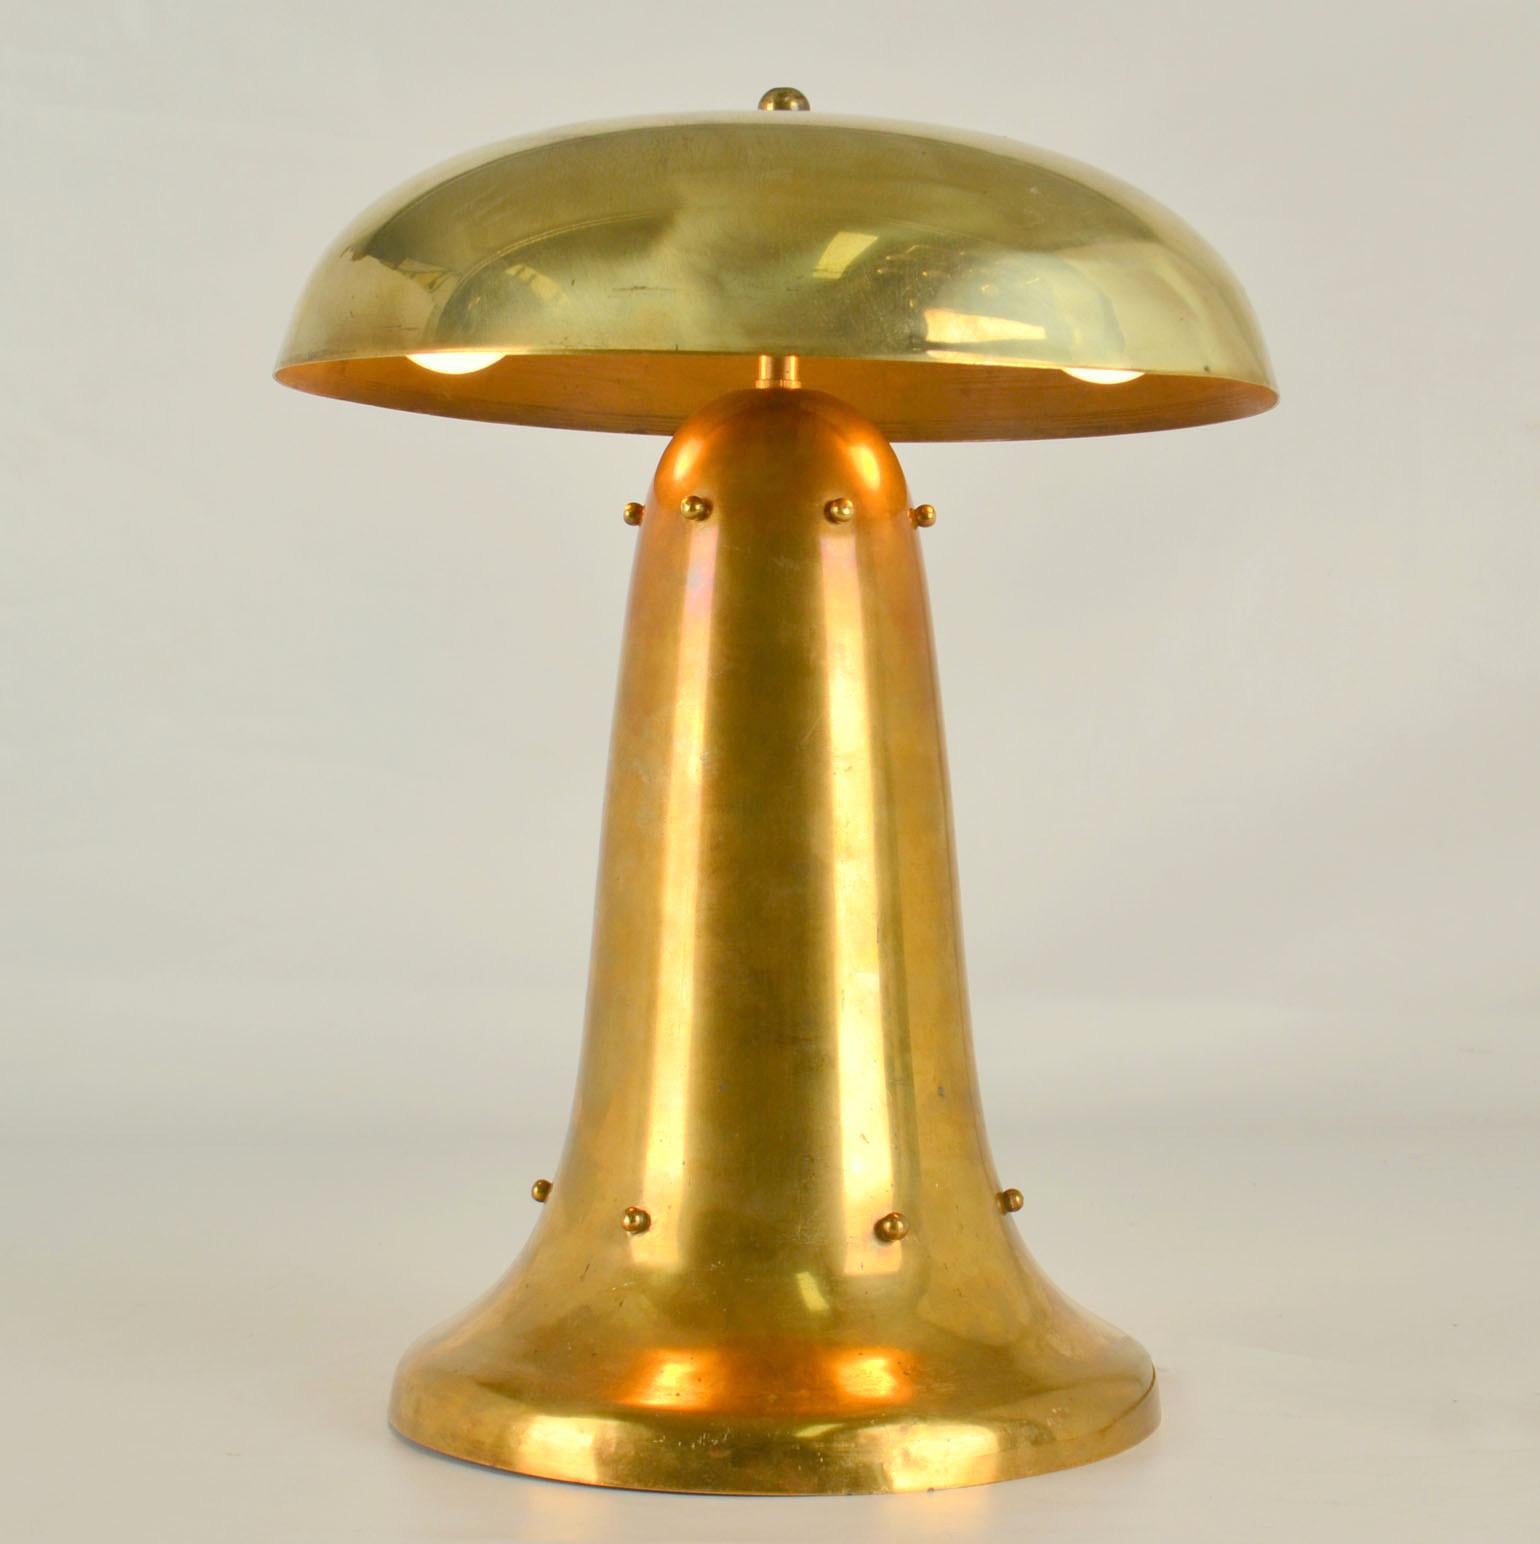 Modernist Art Deco Tisch oder Schreibtisch geschwungene Lampe in Form eines Pilzes mit dekorativen Messingperlen ist außergewöhnlich seltenes Beispiel für niederländisches Design in den 1920er Jahren. Sie stammt aus dem Maschinenzeitalter und ist im